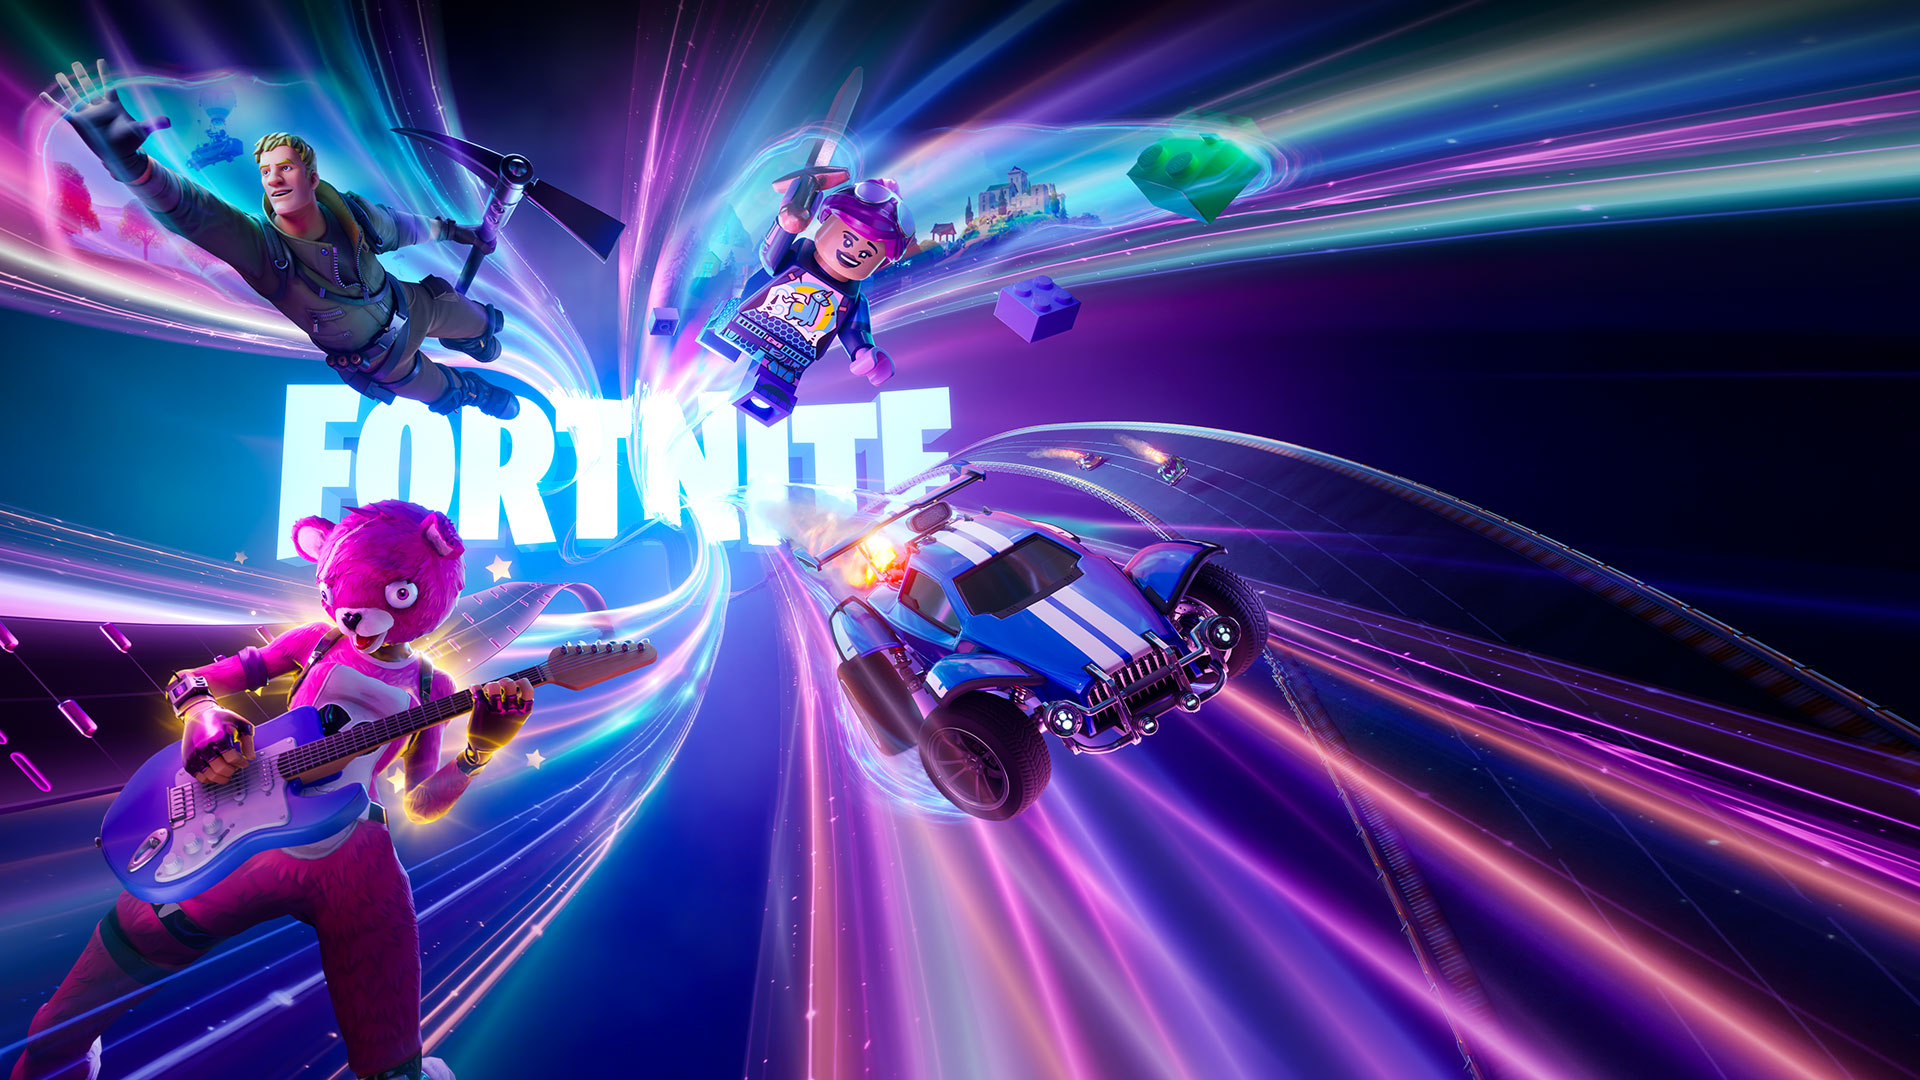 Das Fortnite-Logo, ein Fortnite-Charakter mit einer Spitzhacke, ein rosa Bär mit einer Gitarre, eine Lego-Figur und ein Raketenauto fliegen mit Neonwirbeln um sie herum vorwärts.